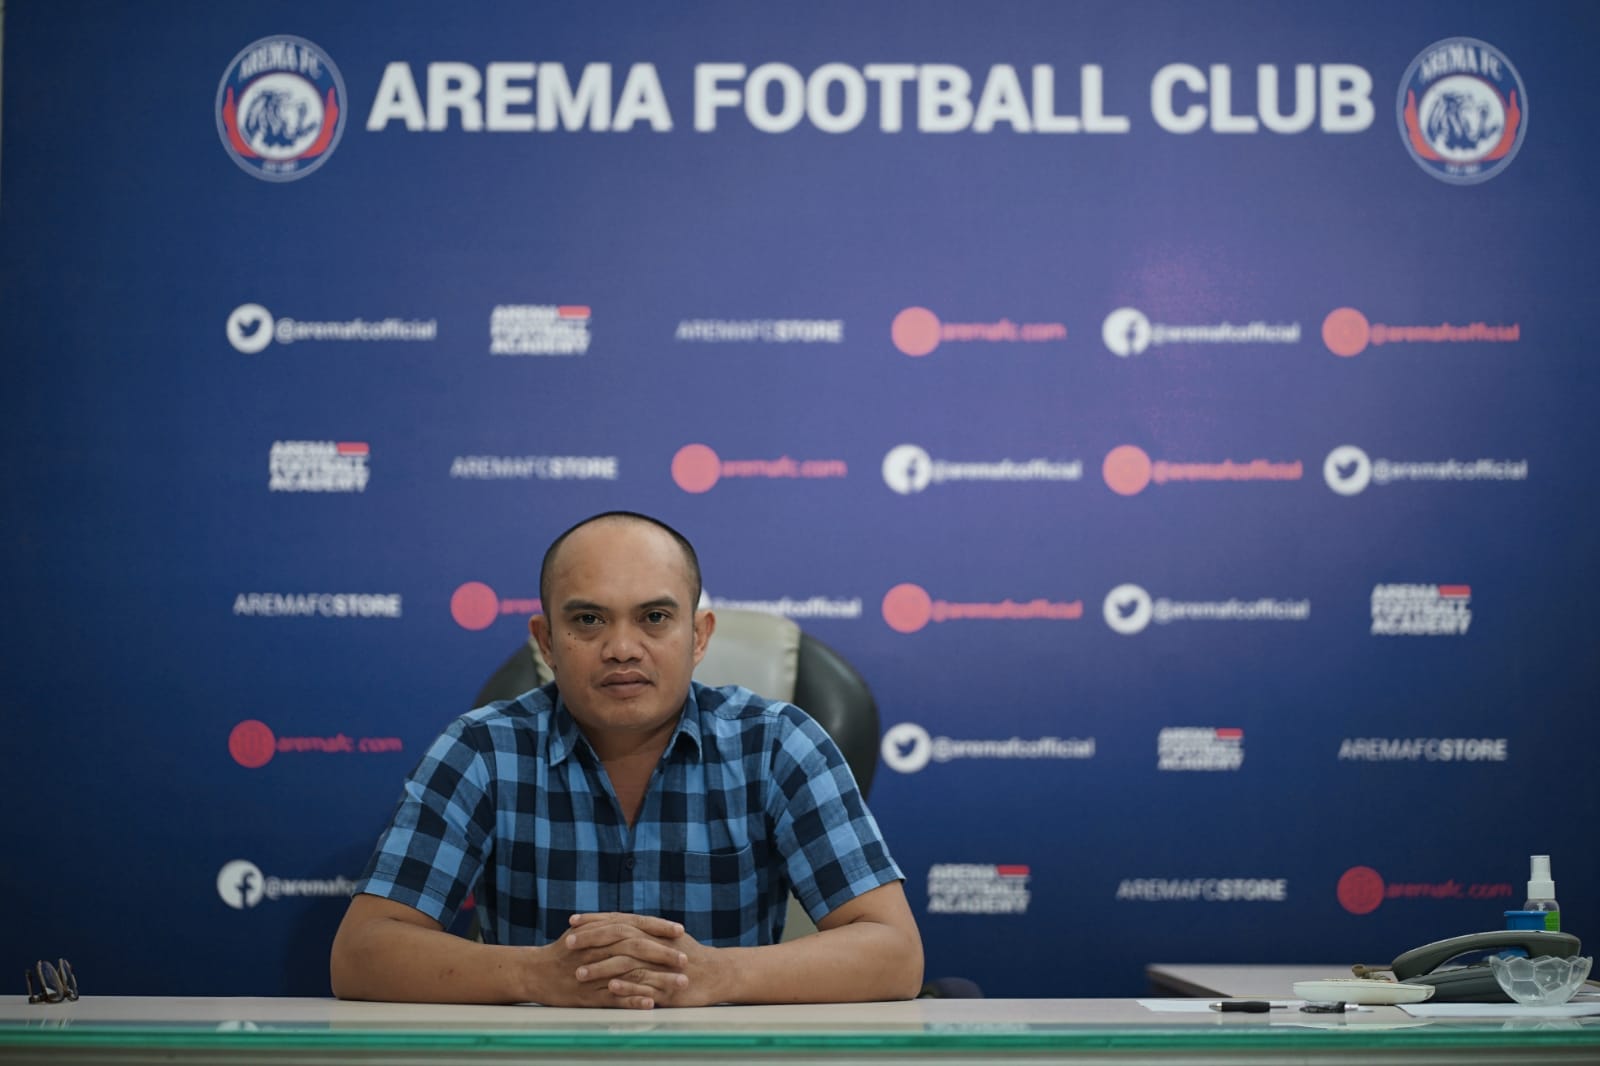 Konsekuensi Jika Arema FC Membubarkan Diri dan Mundur dari Liga 1 2022-2023